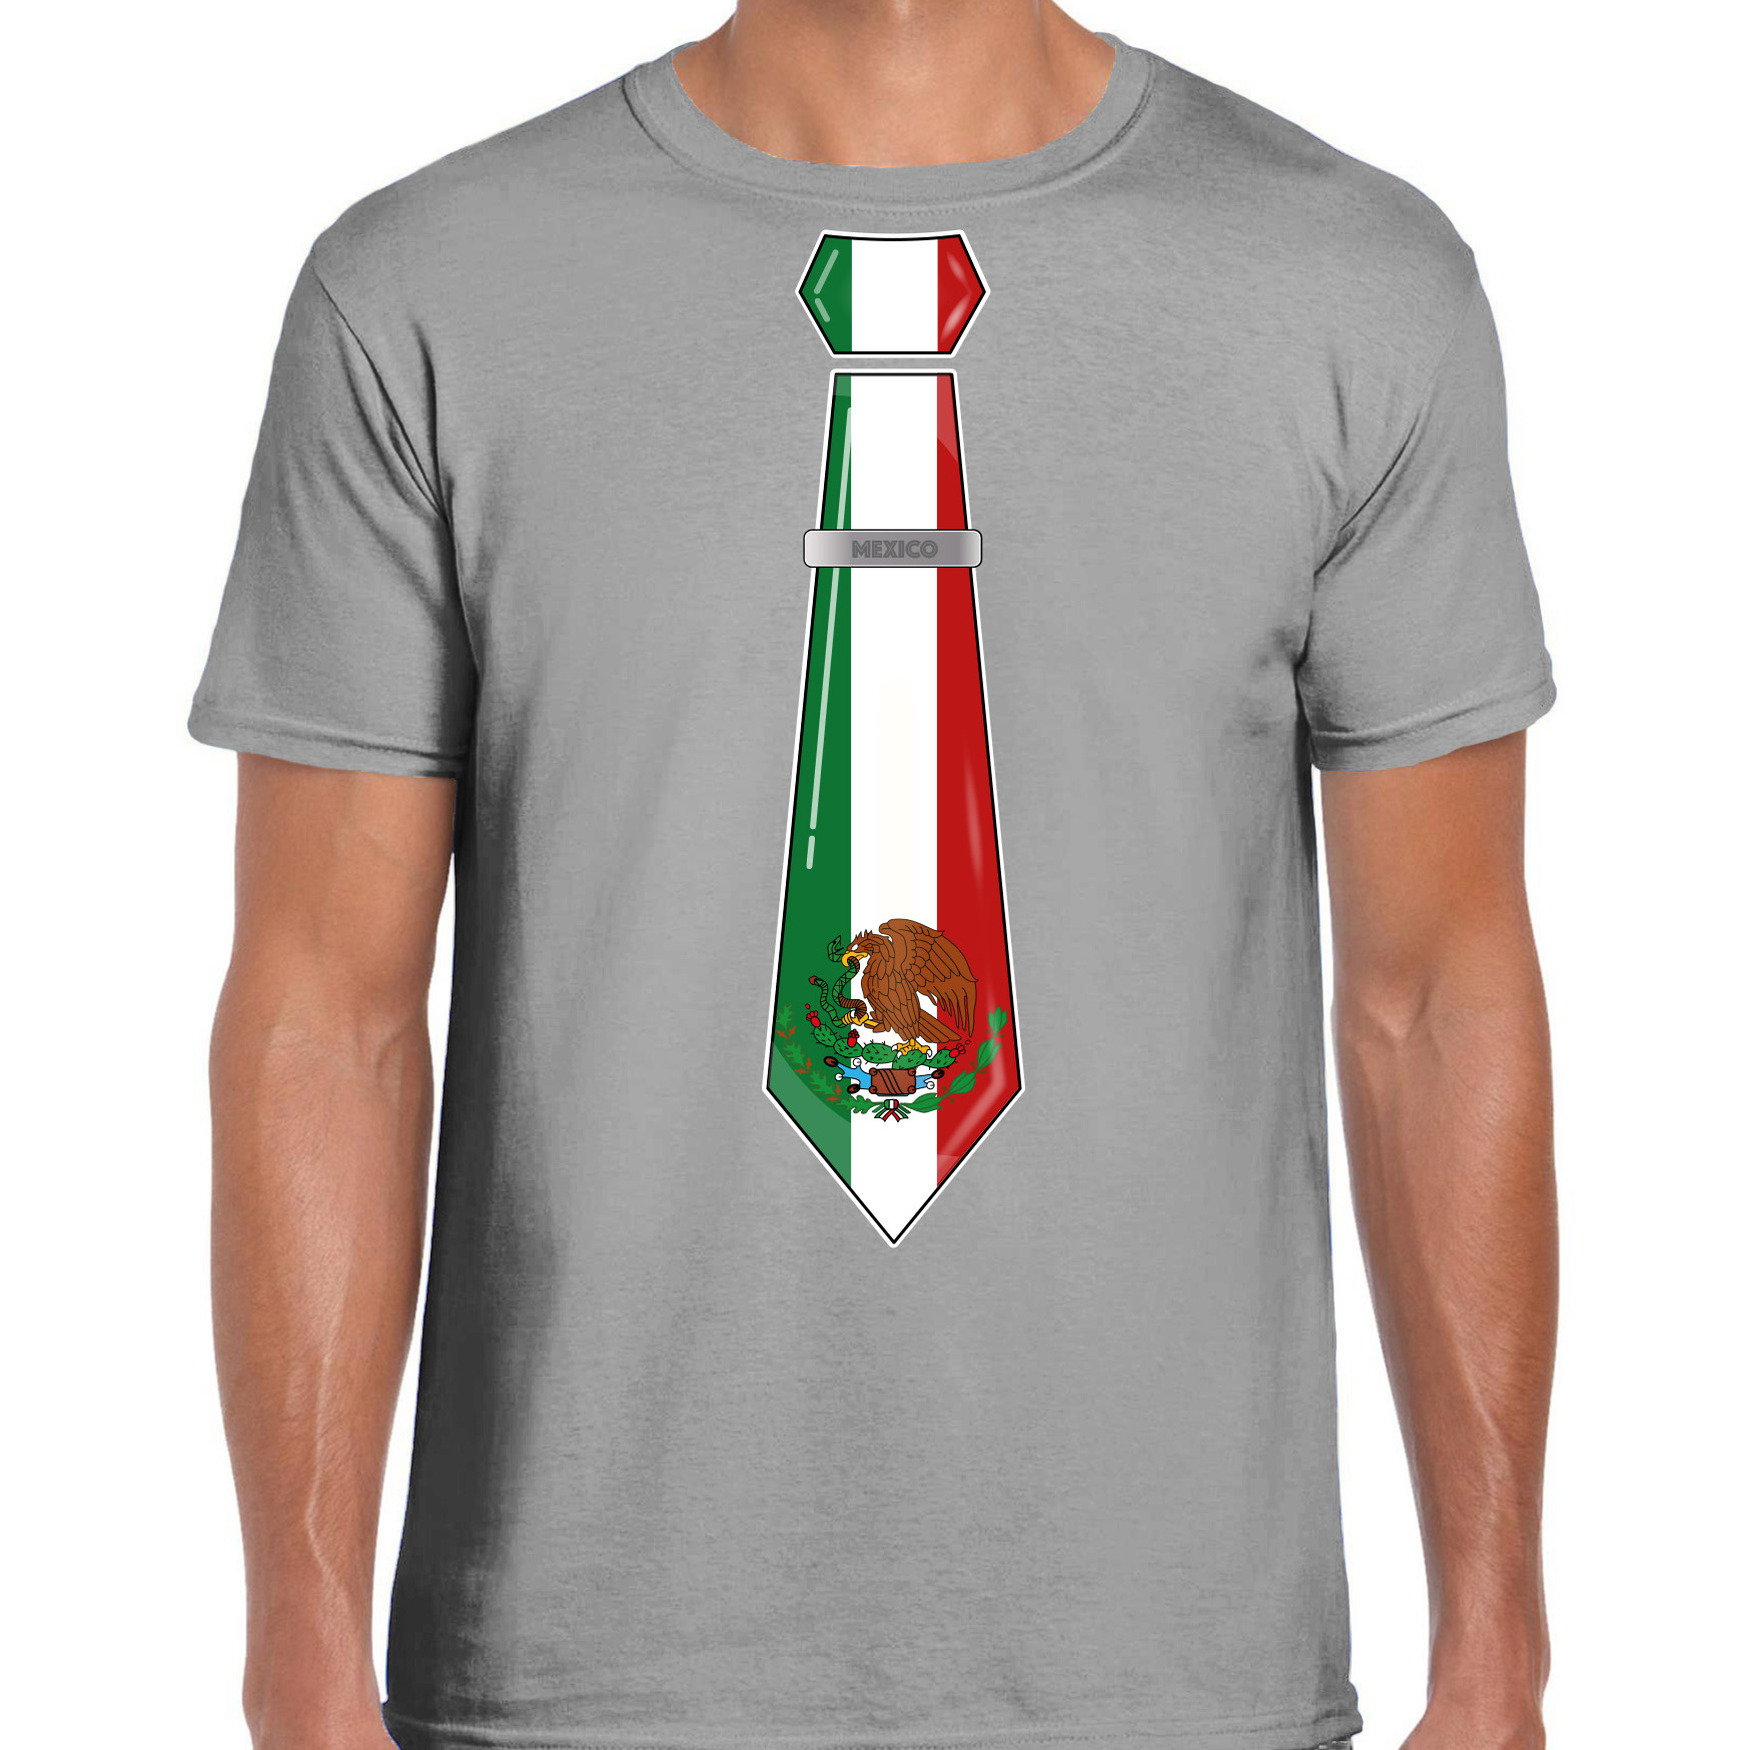 Verkleed T-shirt voor heren stropdas Mexico grijs supporter themafeest